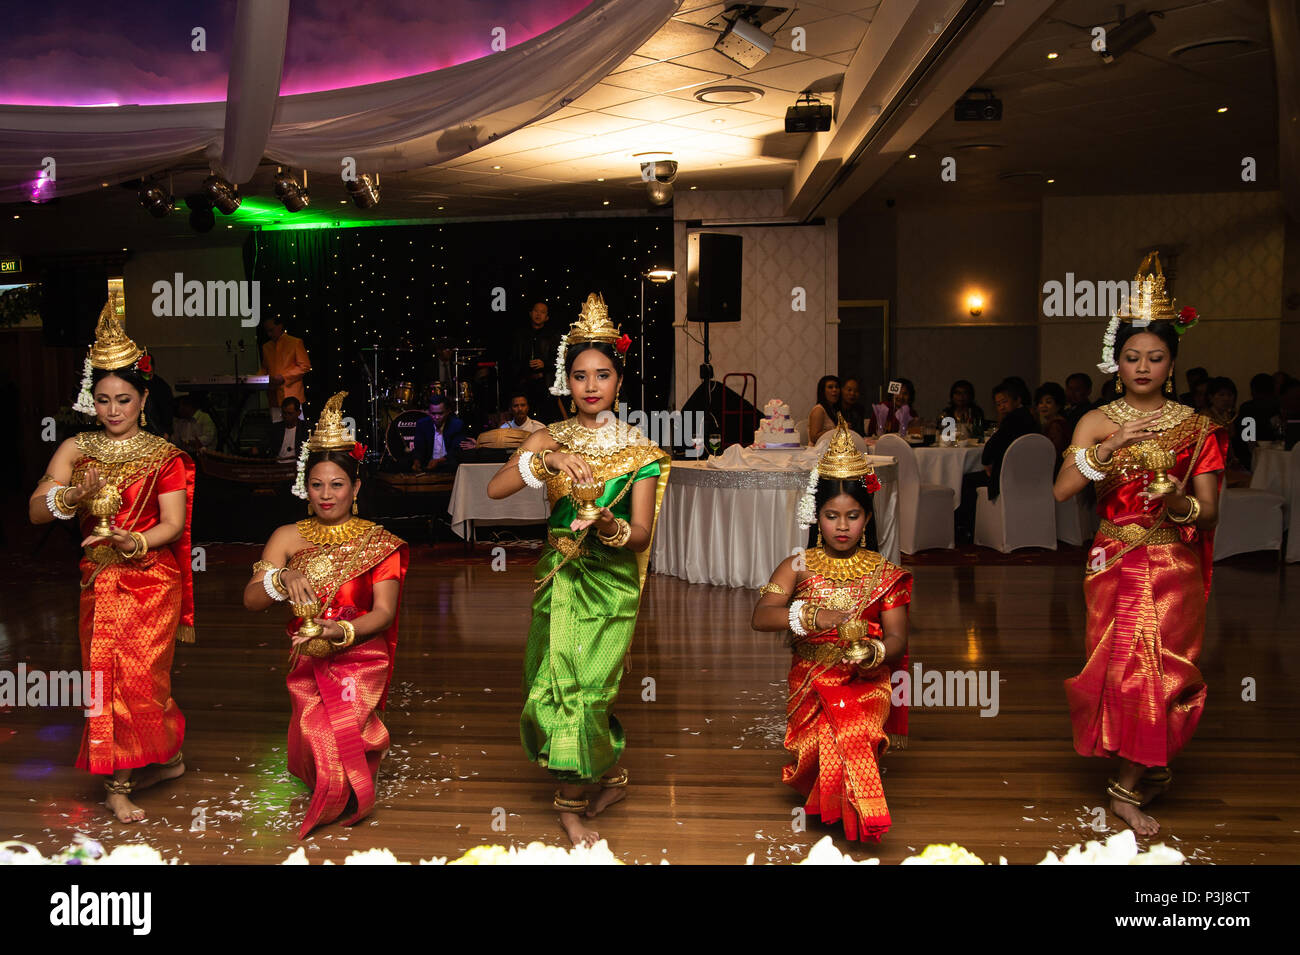 Danse de mariage, Sydney, Australie 20 Avril 2014 : Les femmes La danse une danse traditionnelle cambodgienne appelée la danse de Chuon Por (danse) qui souhaitent en K traditionnel Banque D'Images